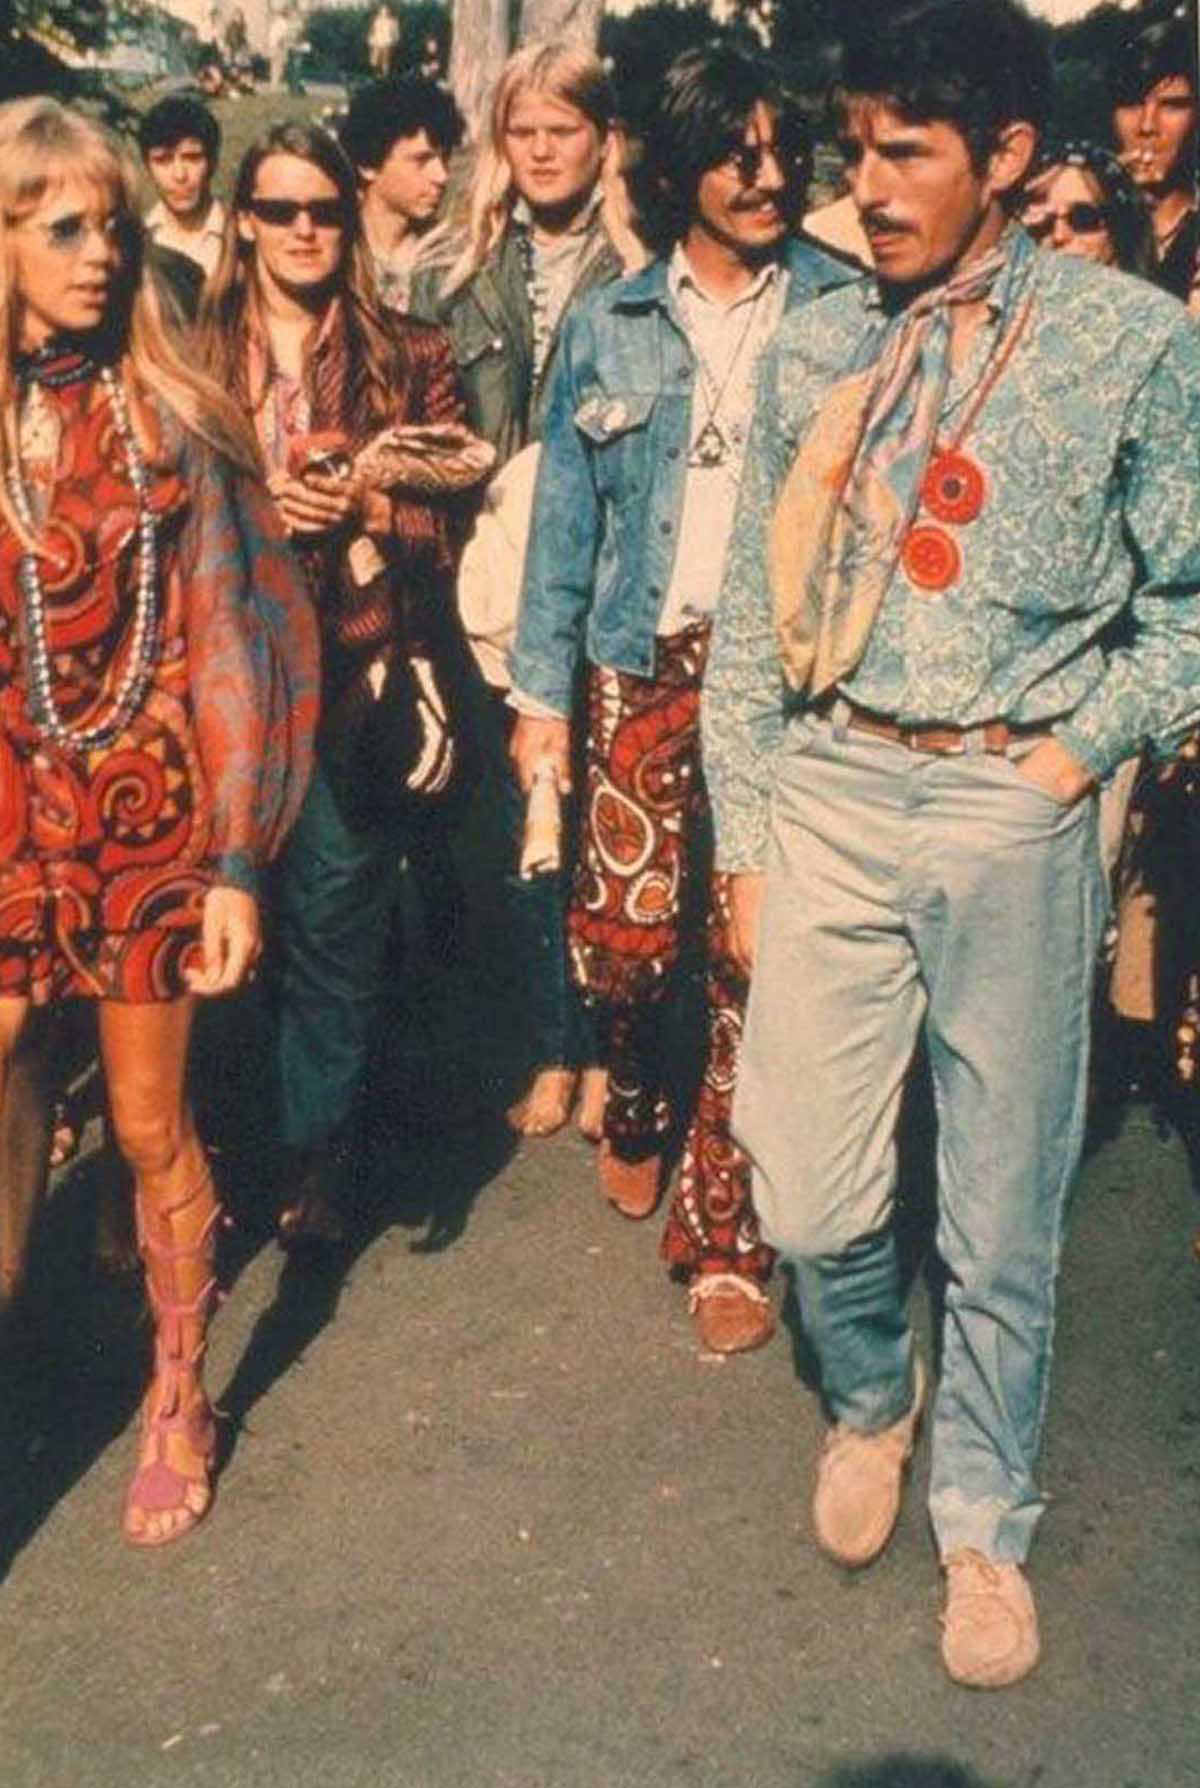 Fotos impressionantes retratam a moda rebelde de Woodstock em 1969 19